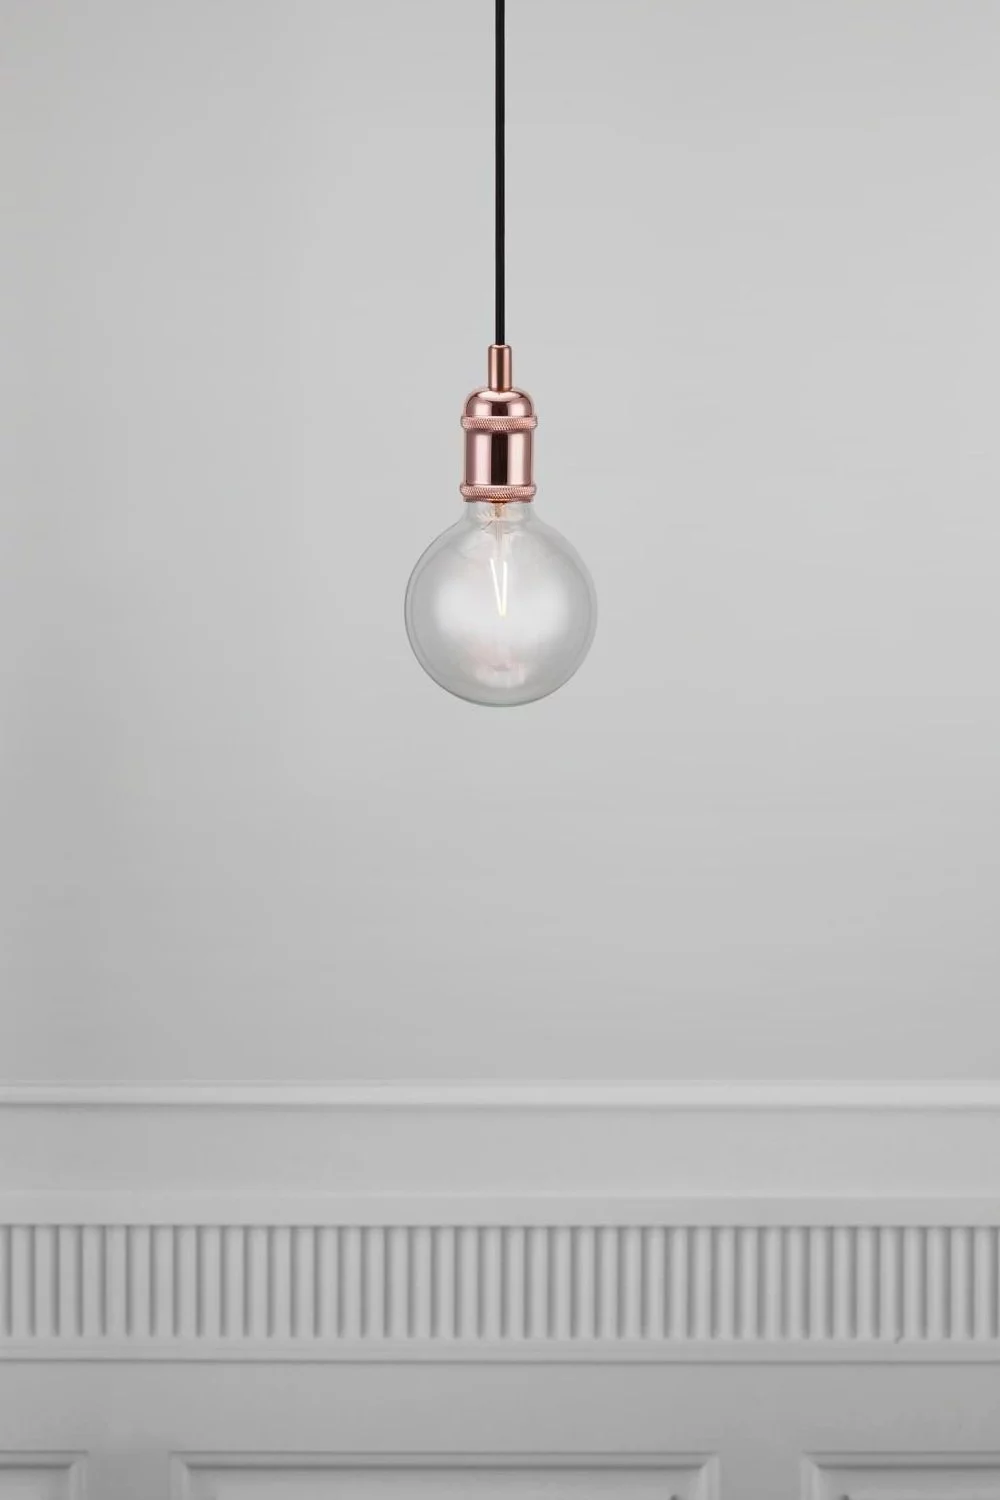   
                        Люстра NORDLUX (Данія) 20211    
                         у стилі лофт.  
                        Тип джерела світла: cвітлодіодні led, енергозберігаючі, розжарювання.                         Форма: коло.                                                                          фото 2